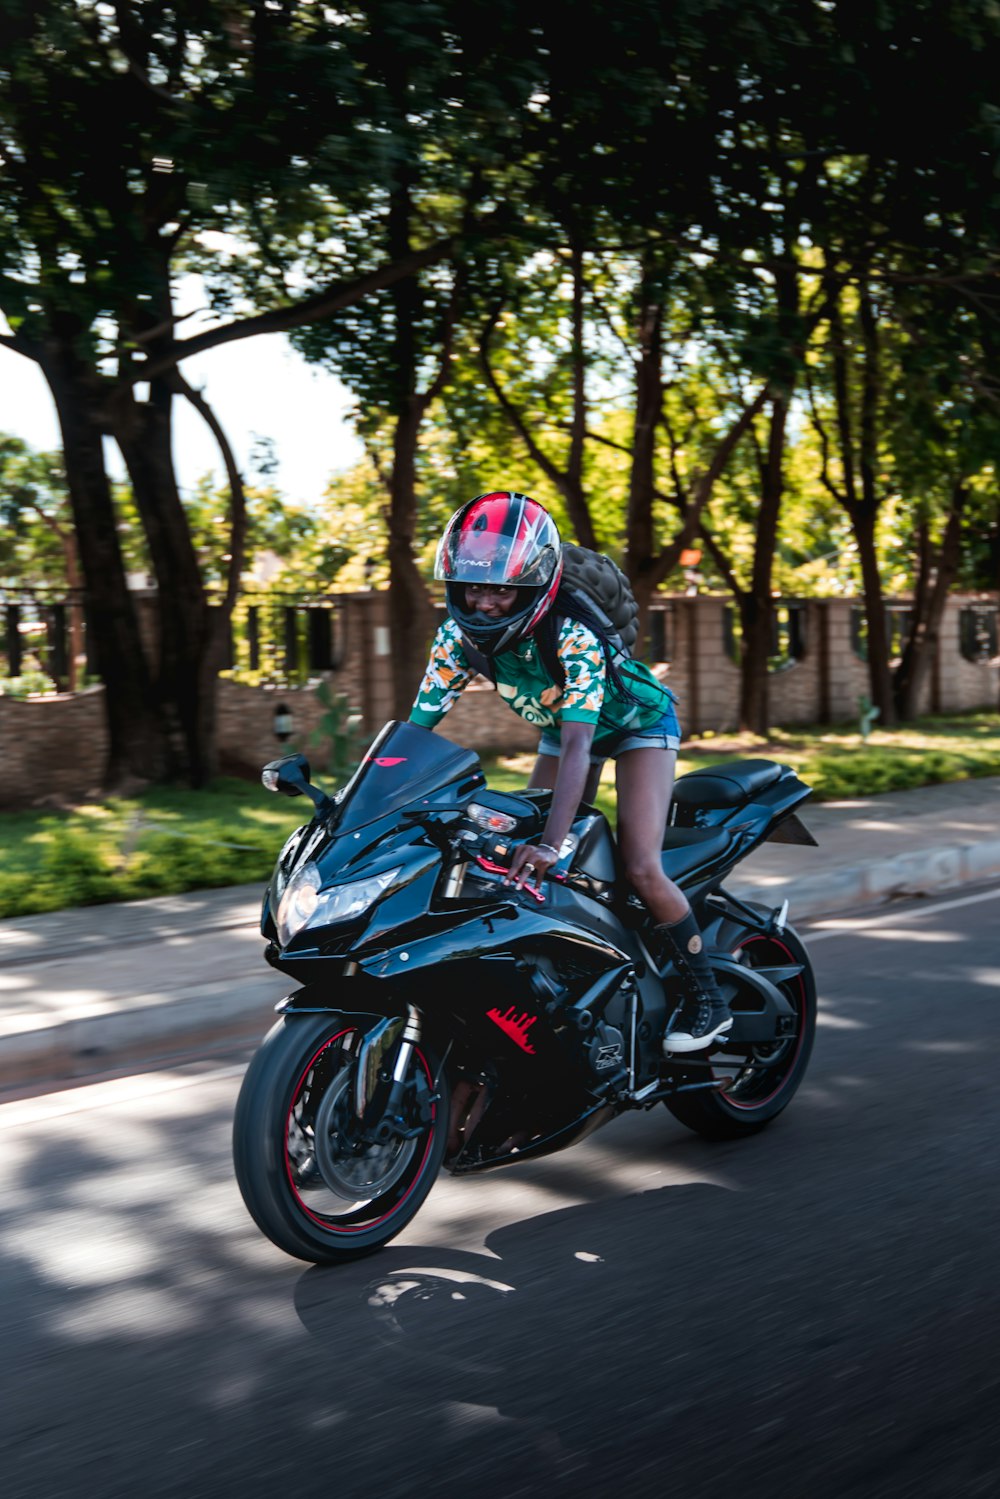 femme sur une moto de sport noire dans la rue